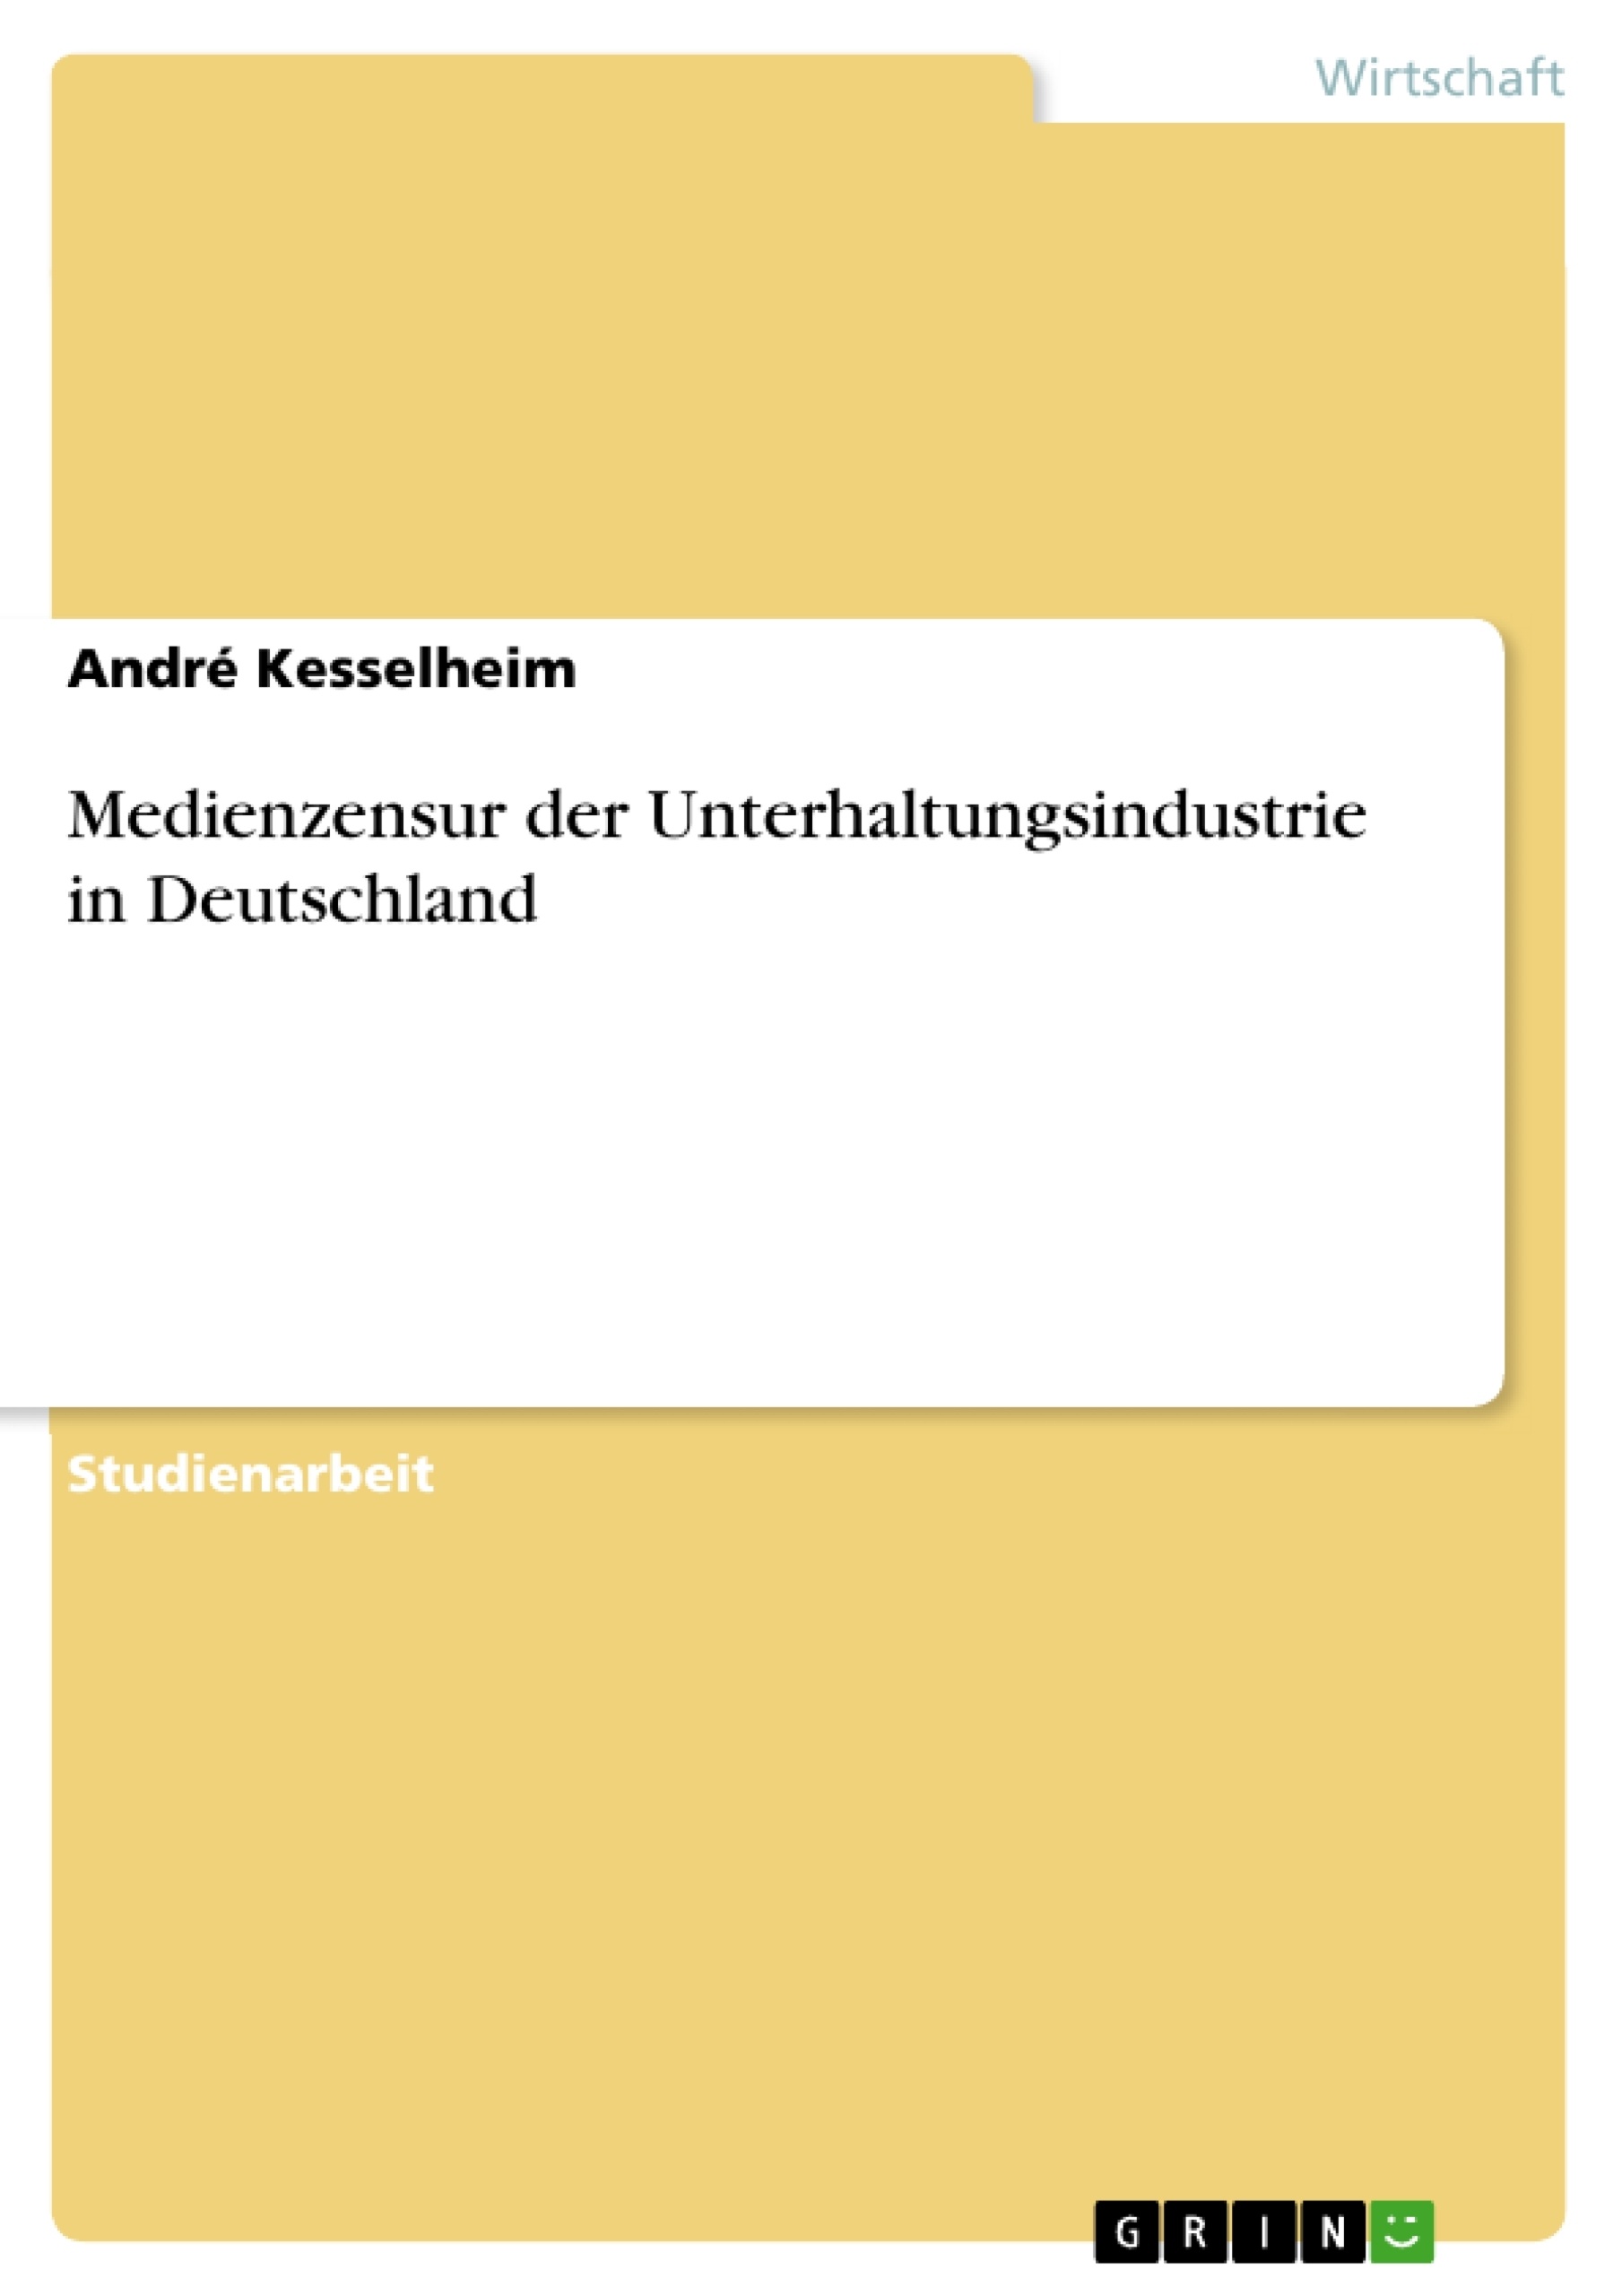 Title: Medienzensur der Unterhaltungsindustrie in Deutschland